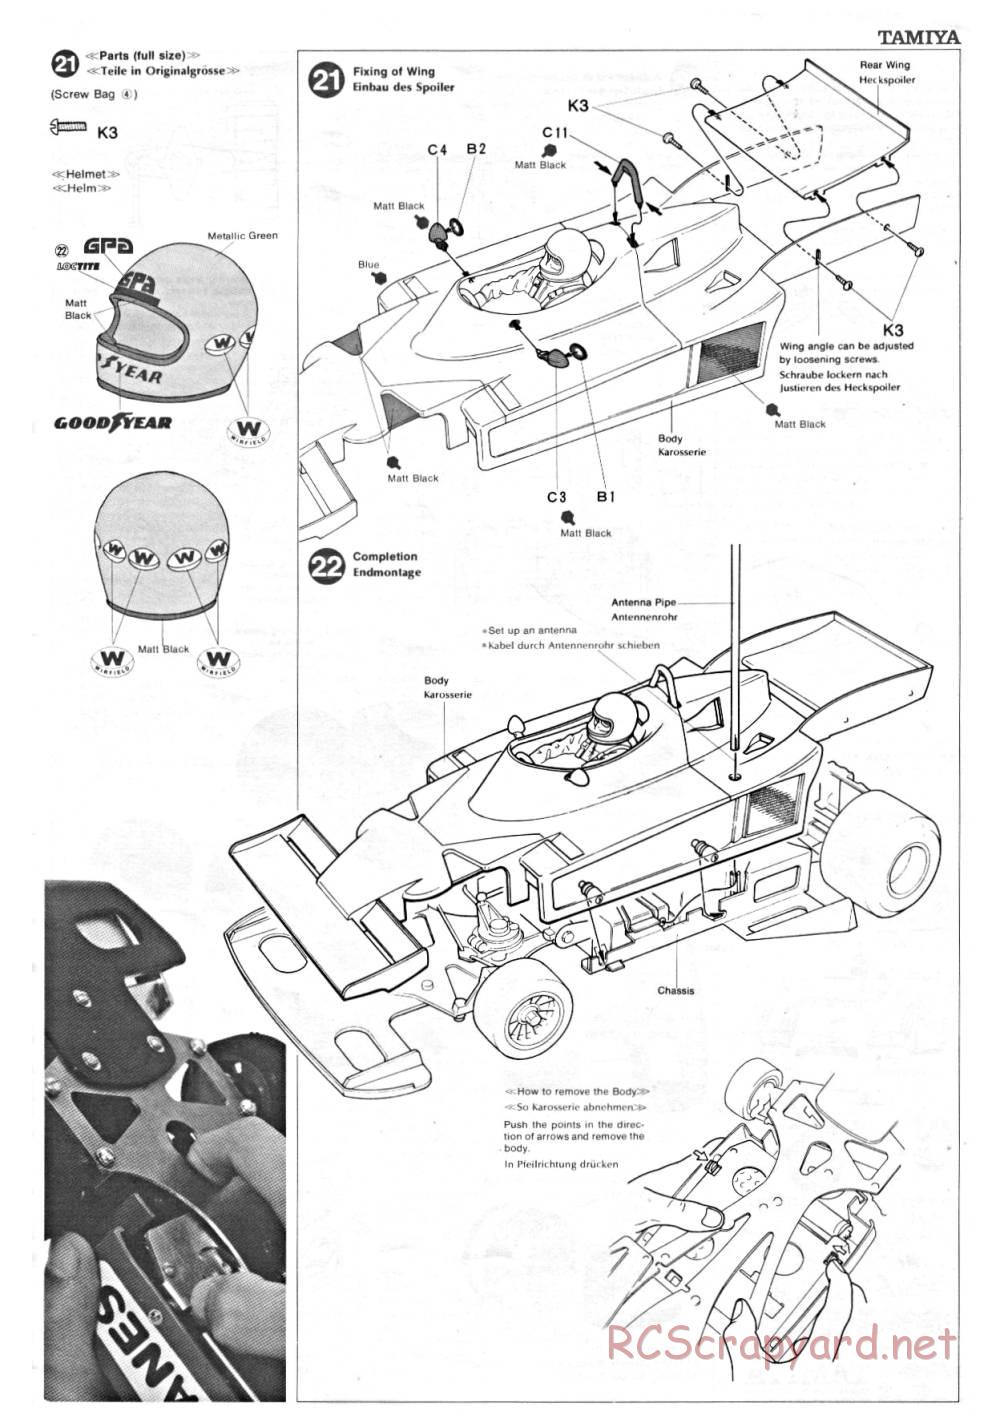 Tamiya - Ligier JS9 Matra - 58010 - Manual - Page 11